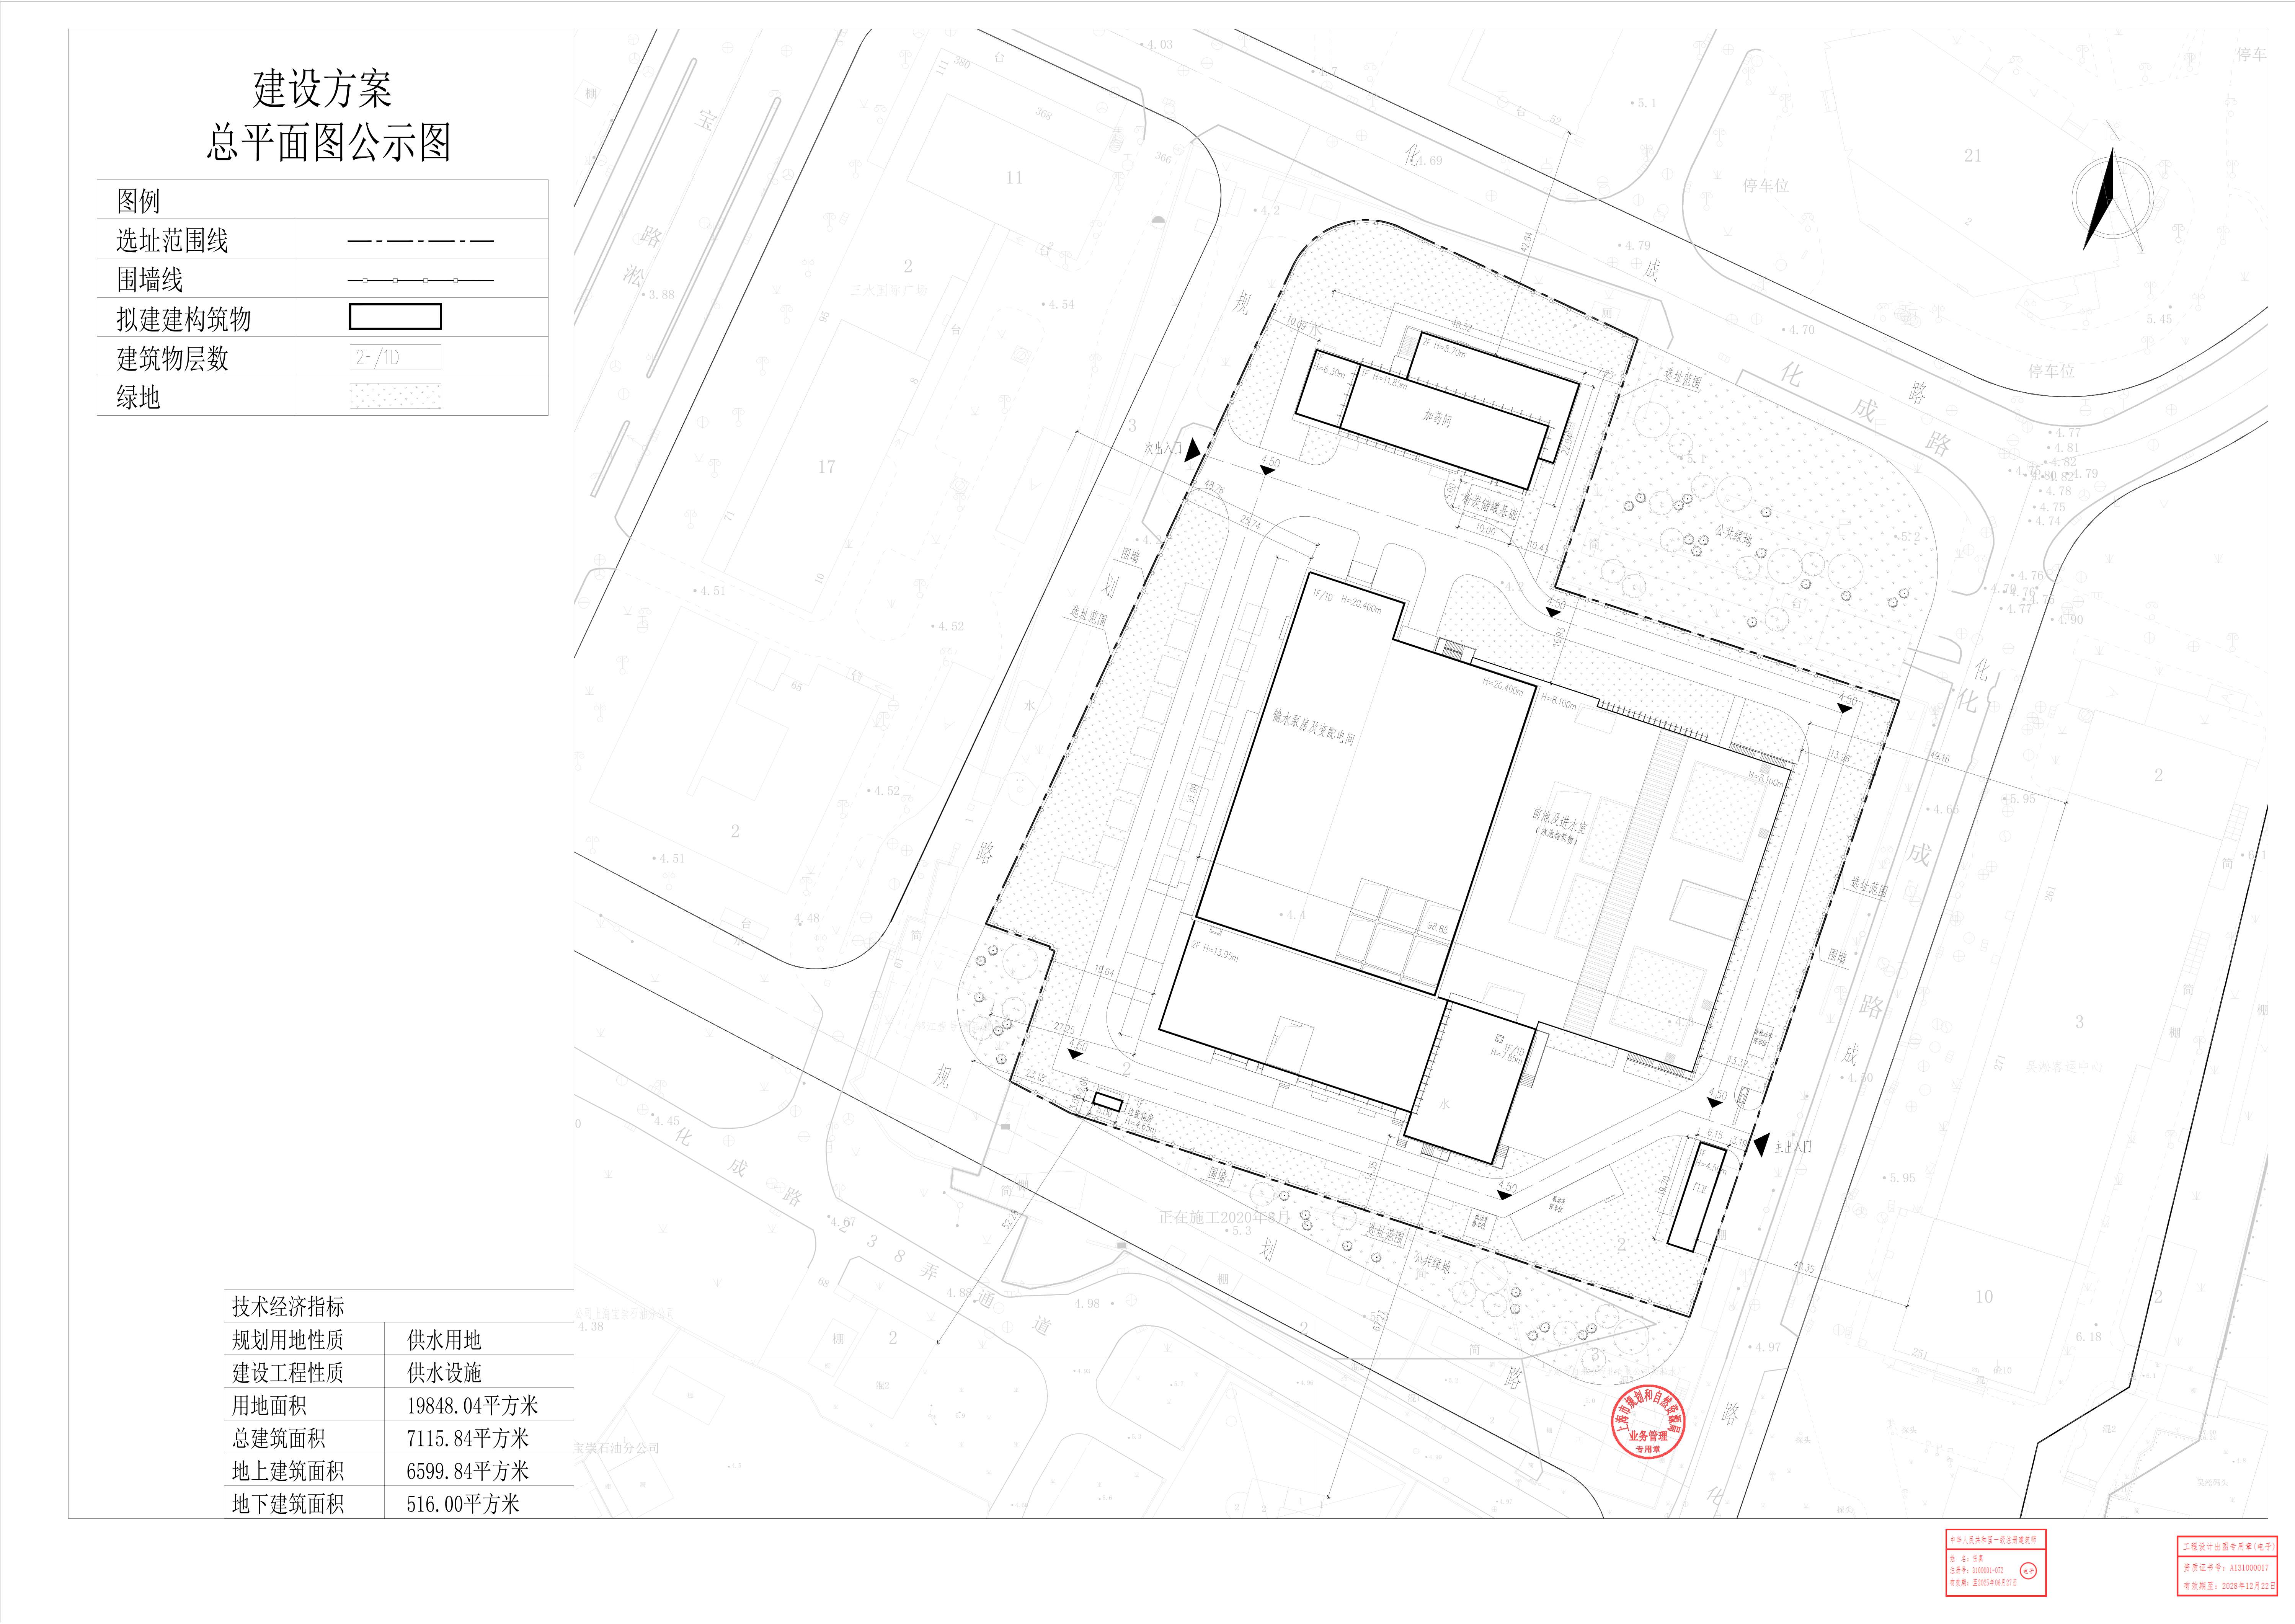 关于青草沙-陈行库管连通工程（吴淞原水泵站）建设工程设计方案的公示